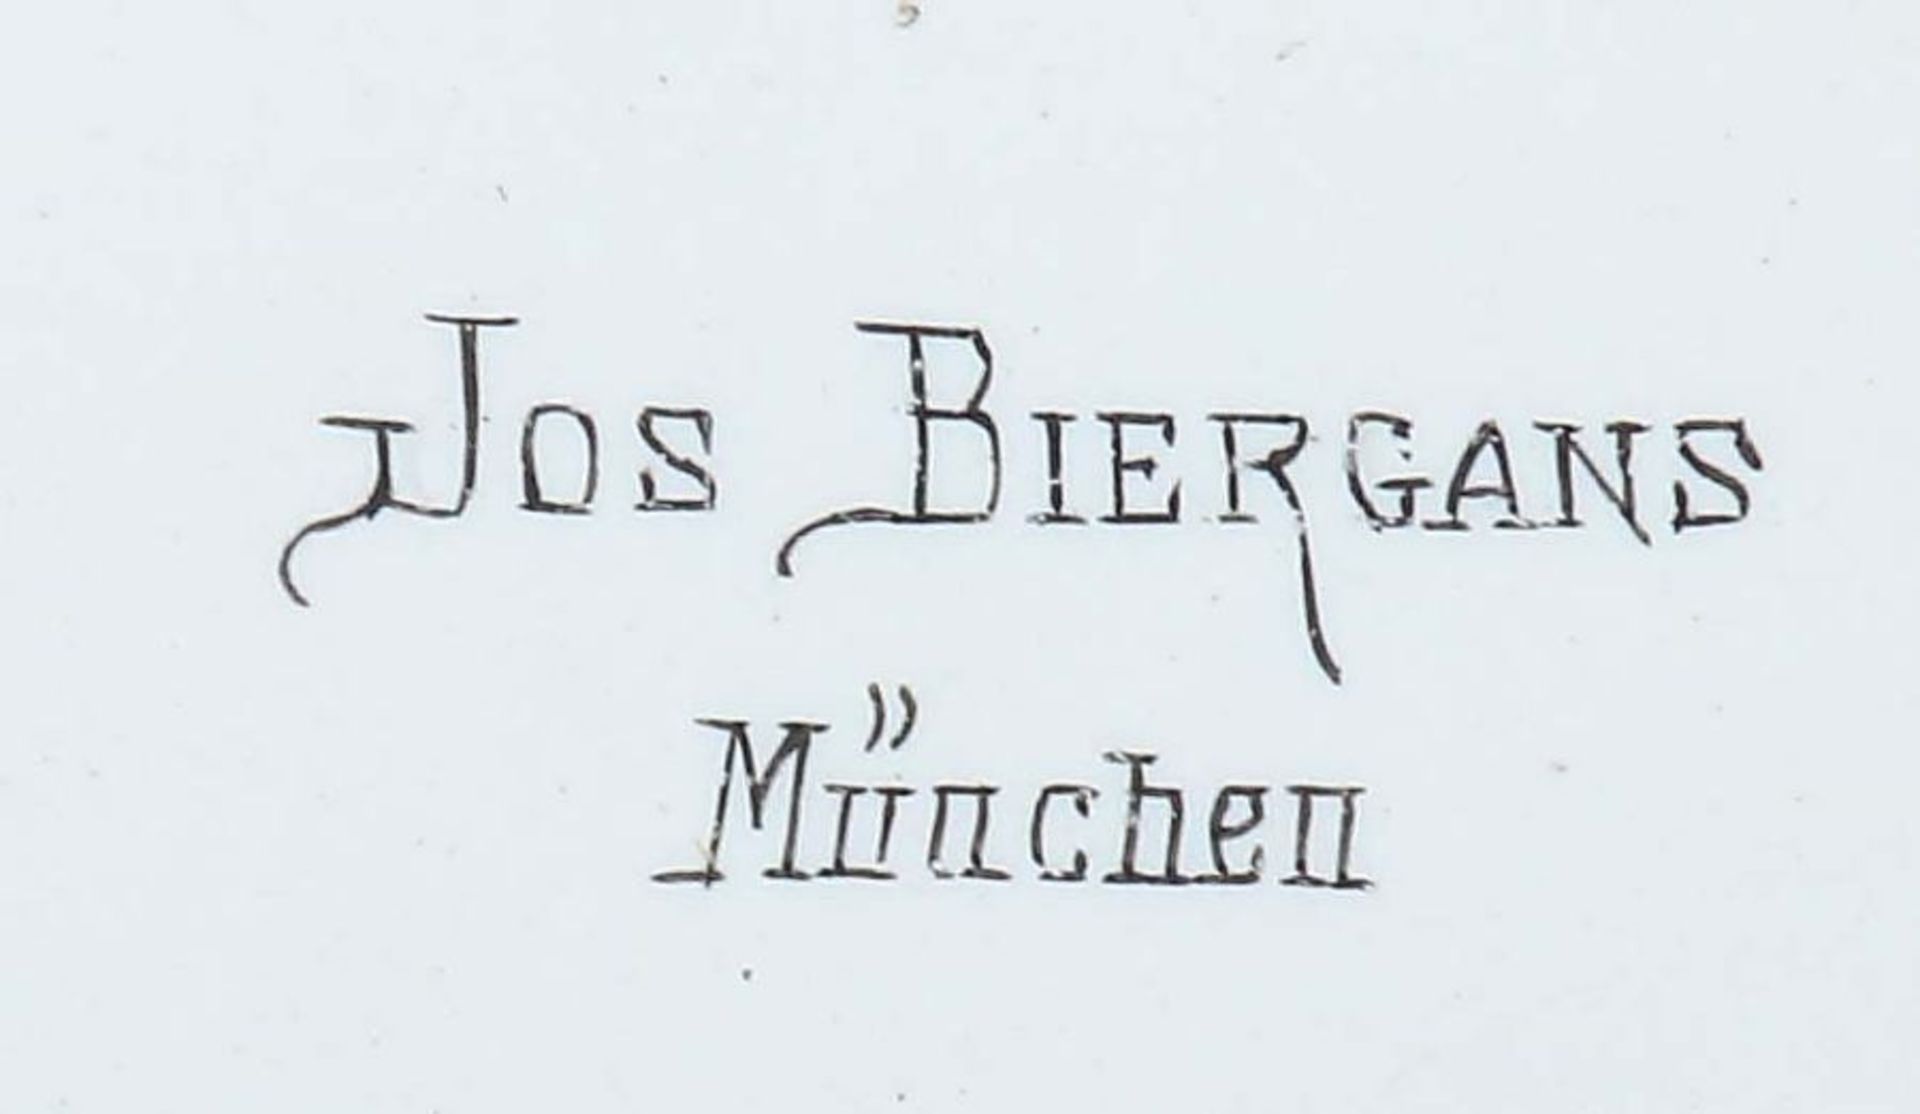 Kaminuhr Ende 19. Jh., bez." J. Biergans, München", gestufter Gehäuseaufbau aus schwarzem Marmor, - Bild 2 aus 4